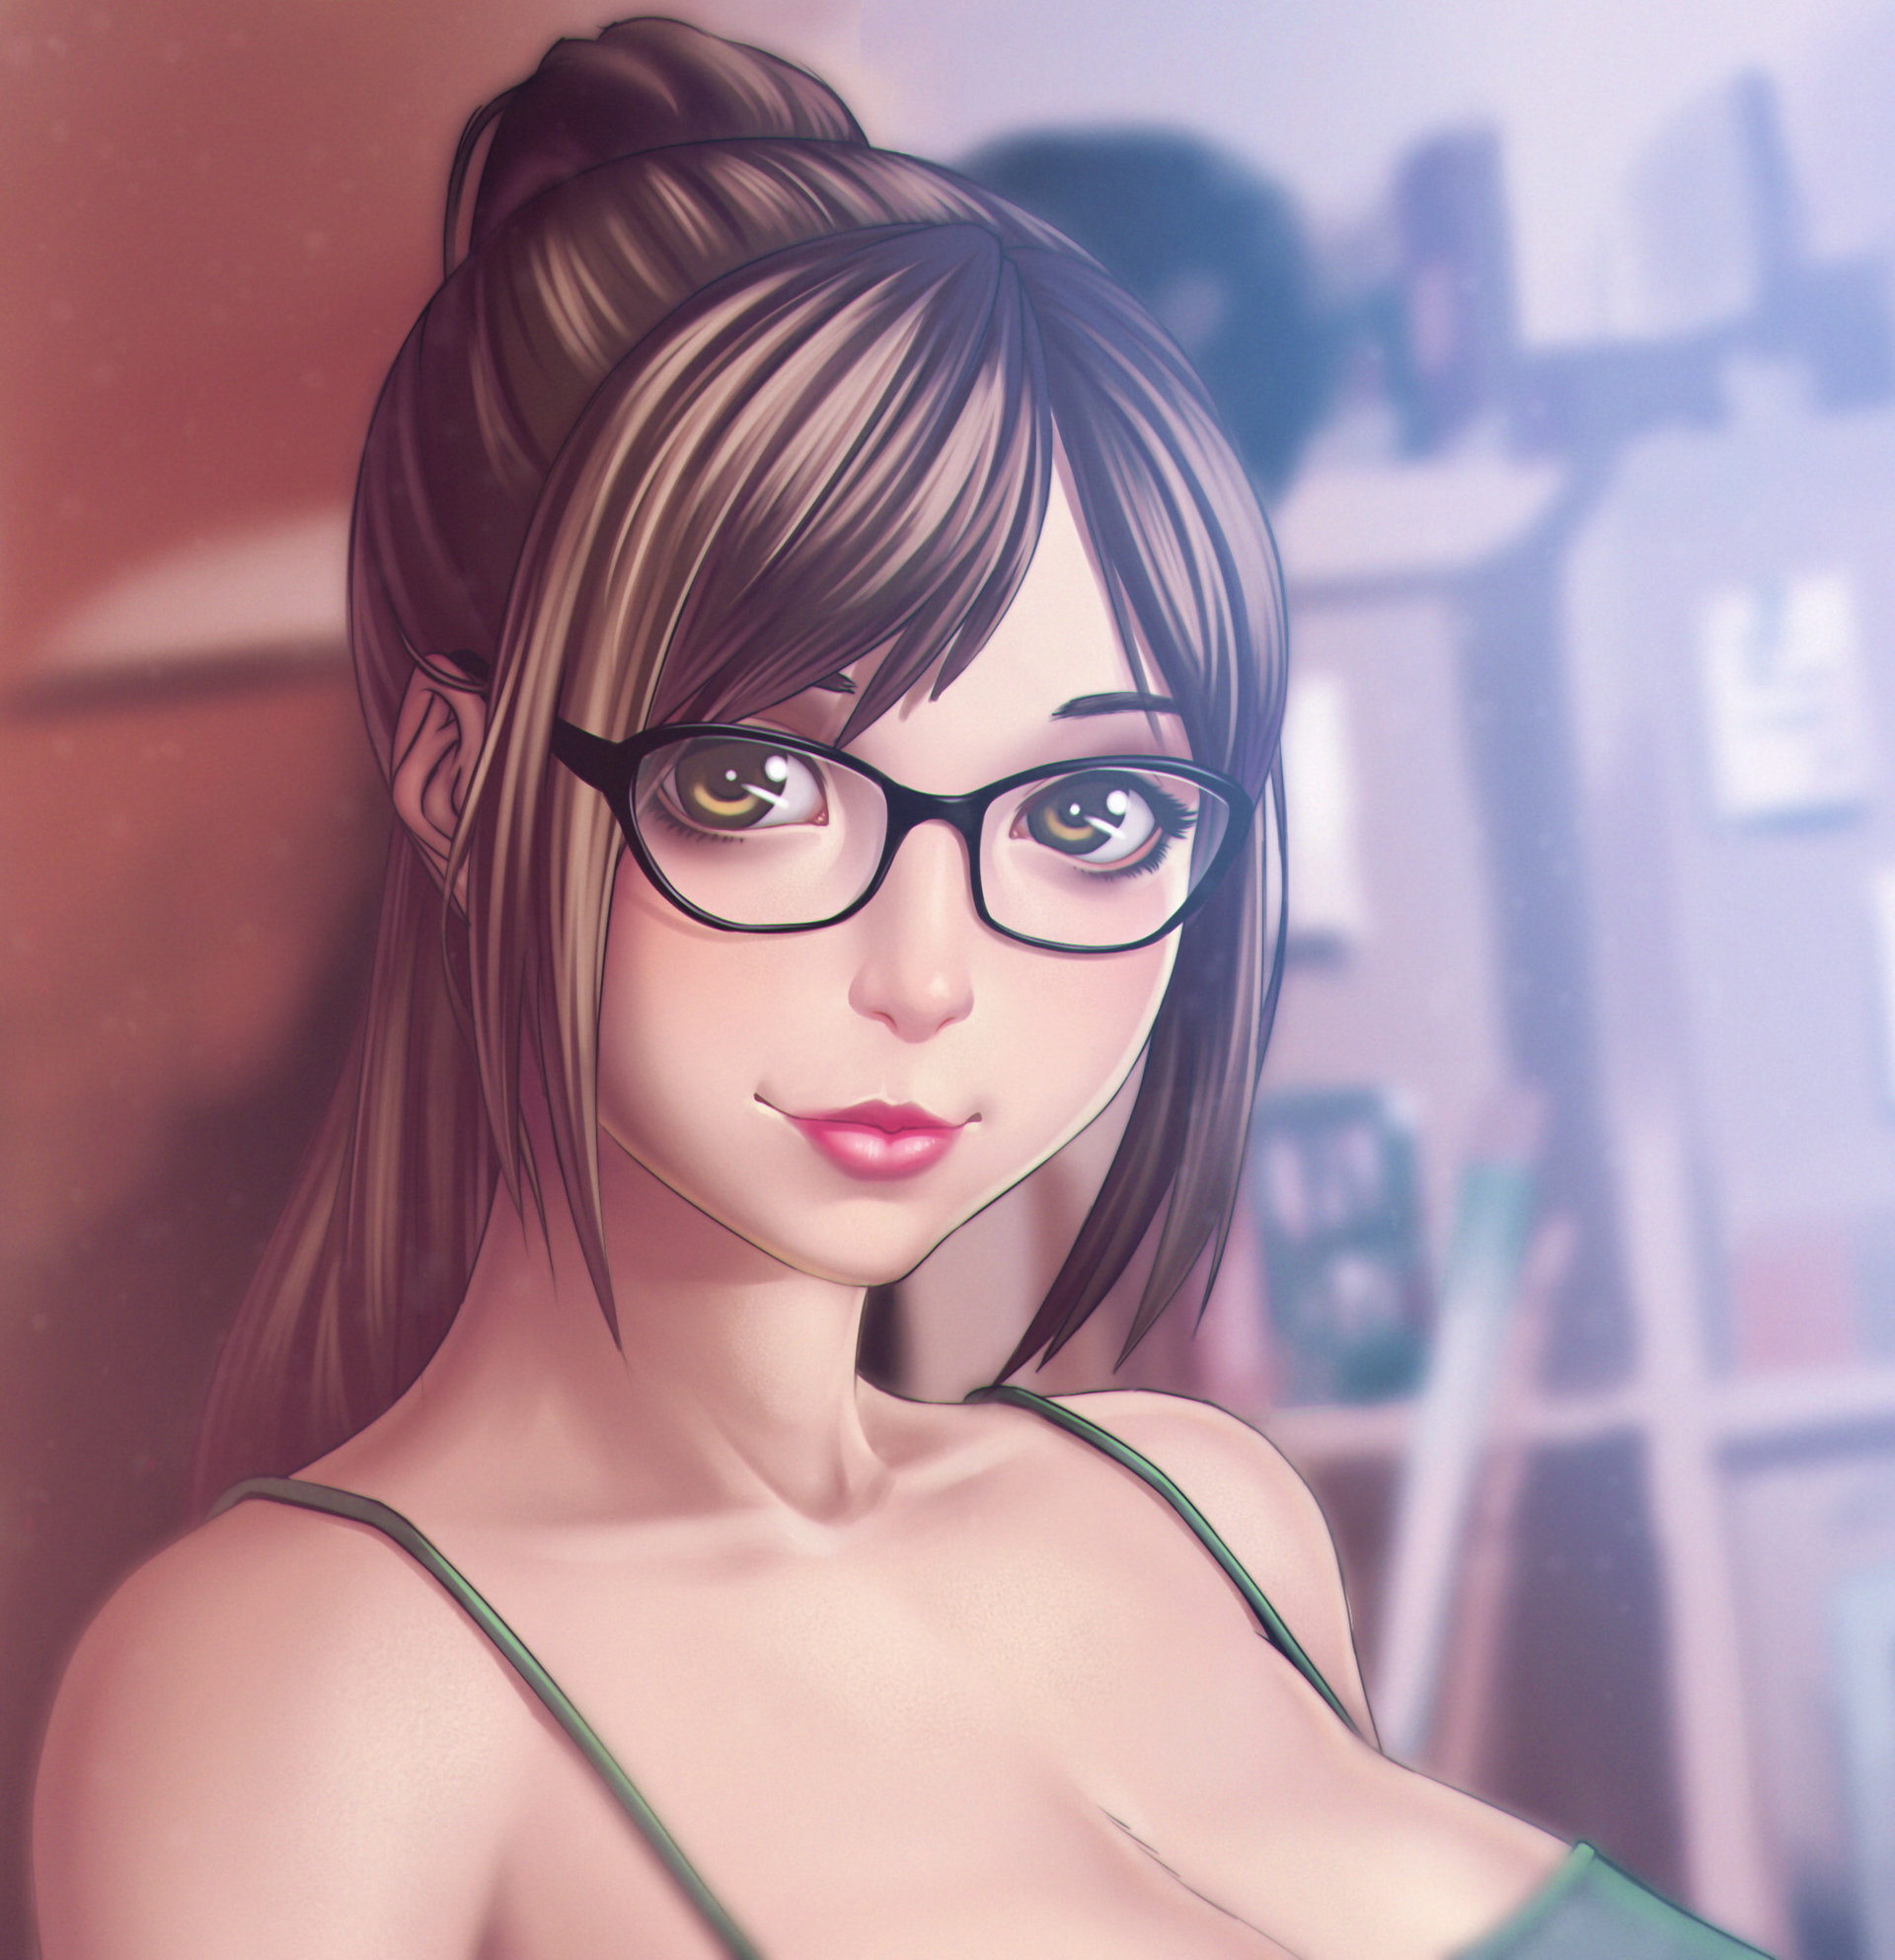 ArtStation - Glasses girl